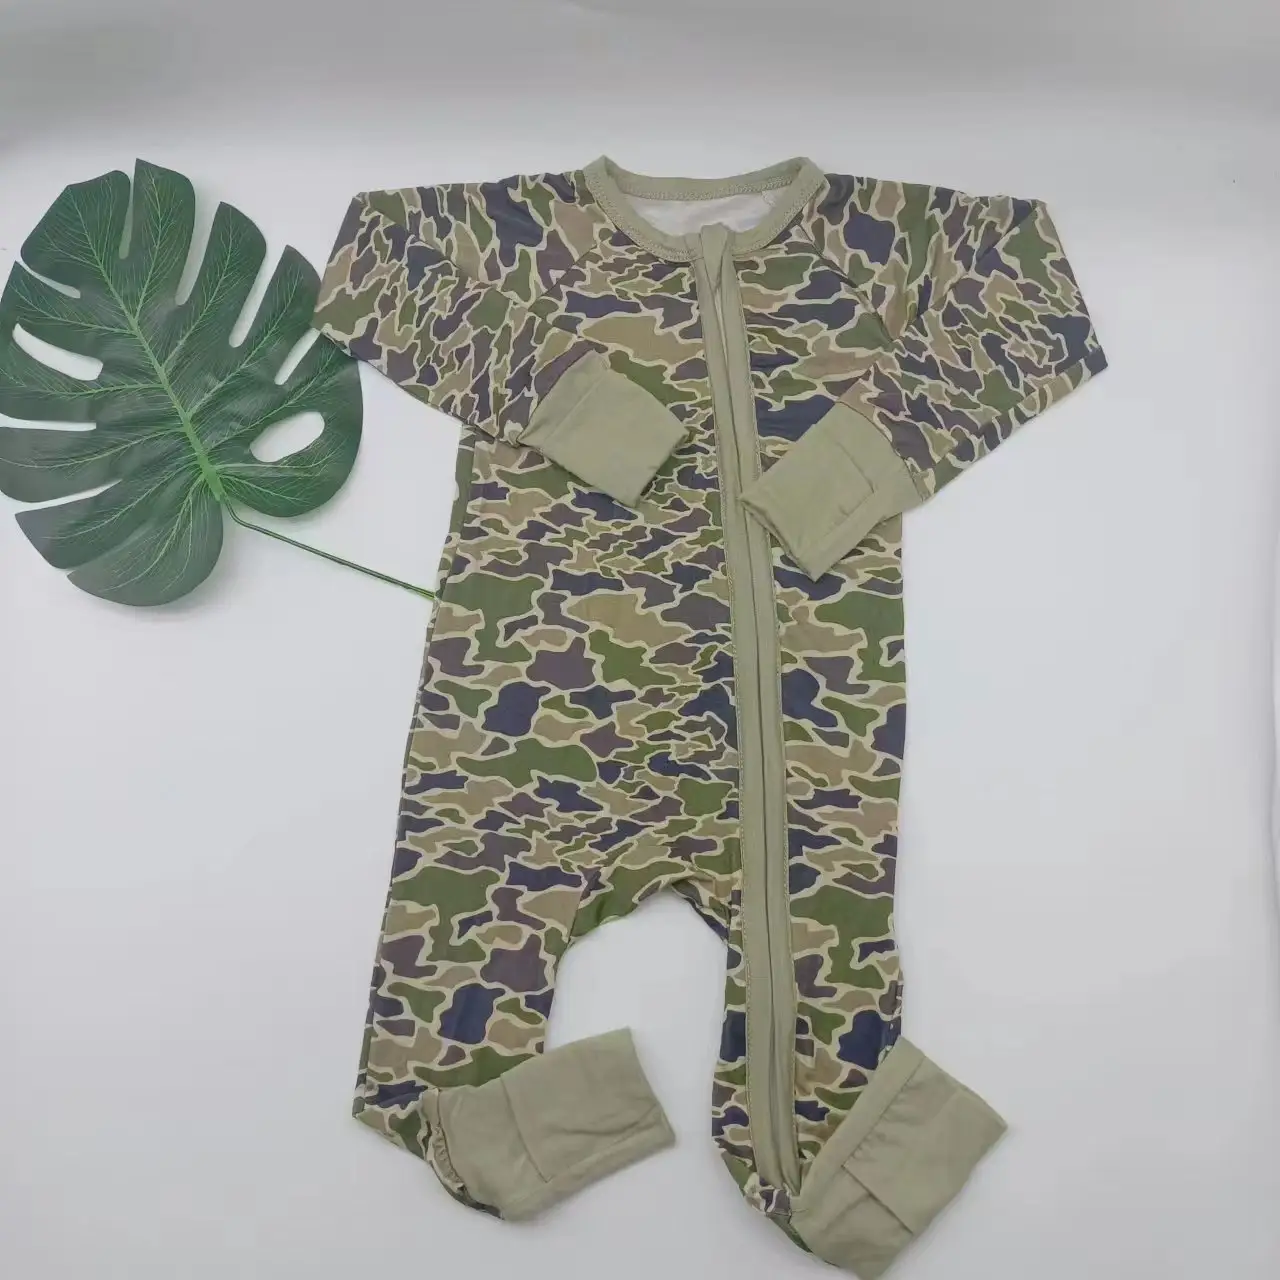 Novo design pista terno bebê meninas liso 2pcs vestido de linho roupas de bebê